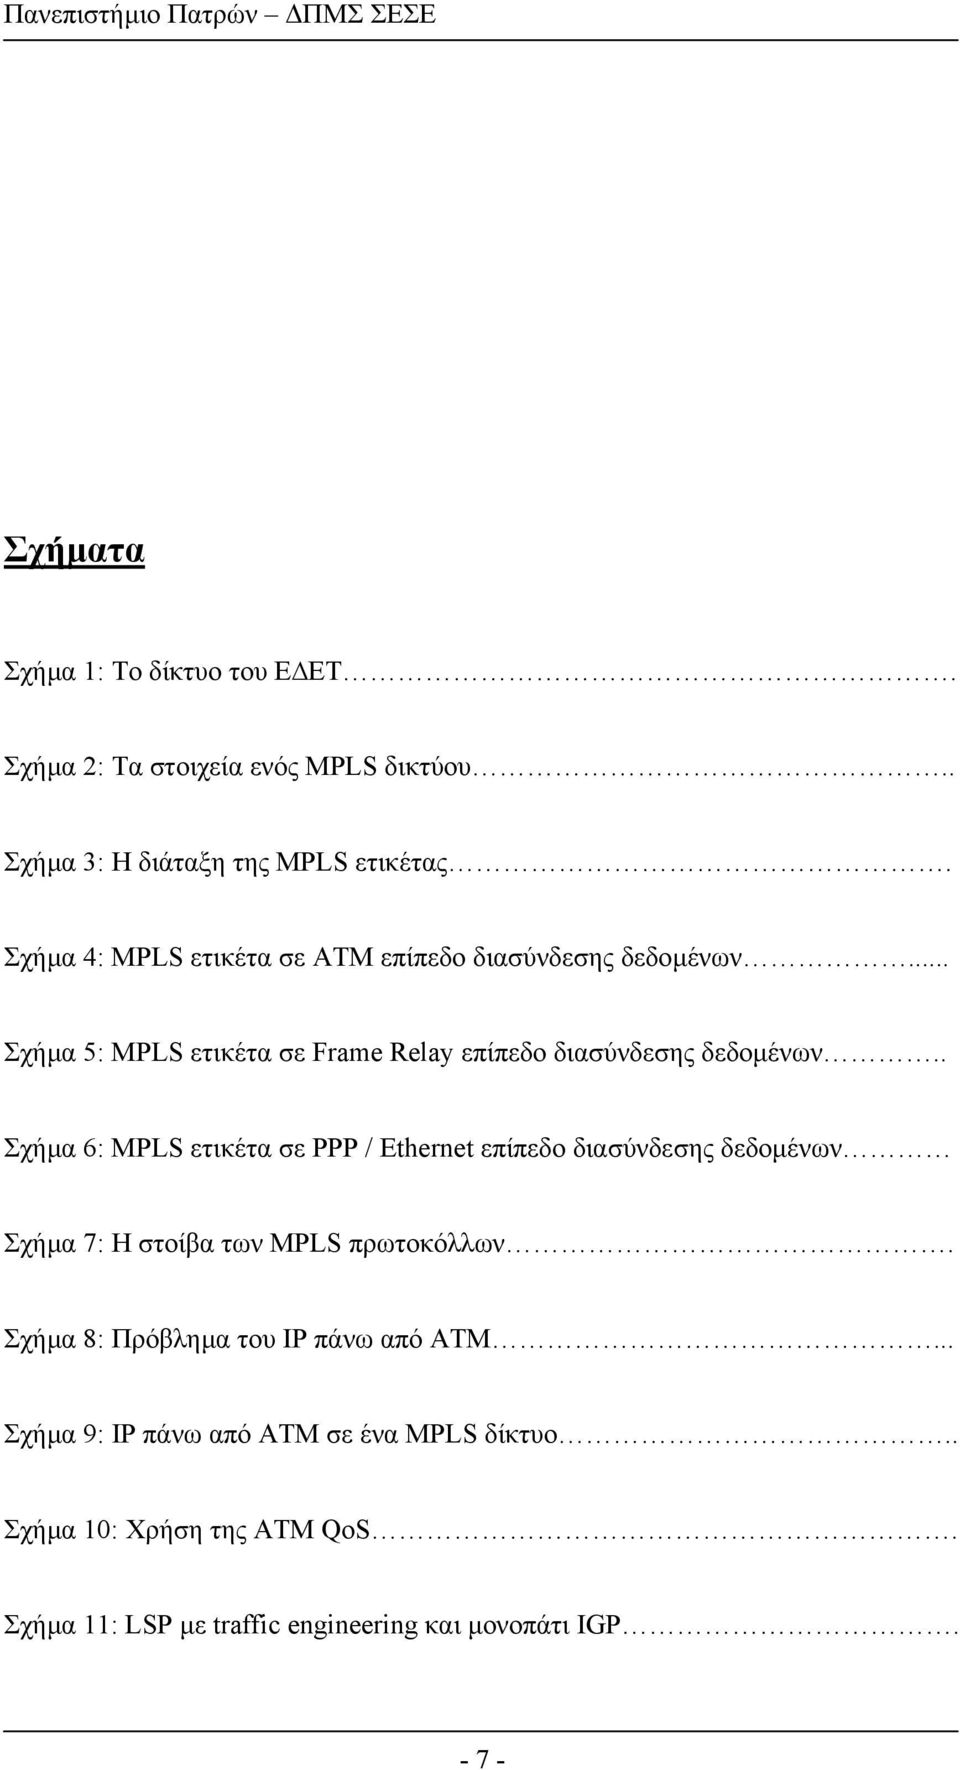 . Σχήµα 6: MPLS ετικέτα σε PPP / Ethernet επίπεδο διασύνδεσης δεδοµένων Σχήµα 7: Η στοίβα των MPLS πρωτοκόλλων.